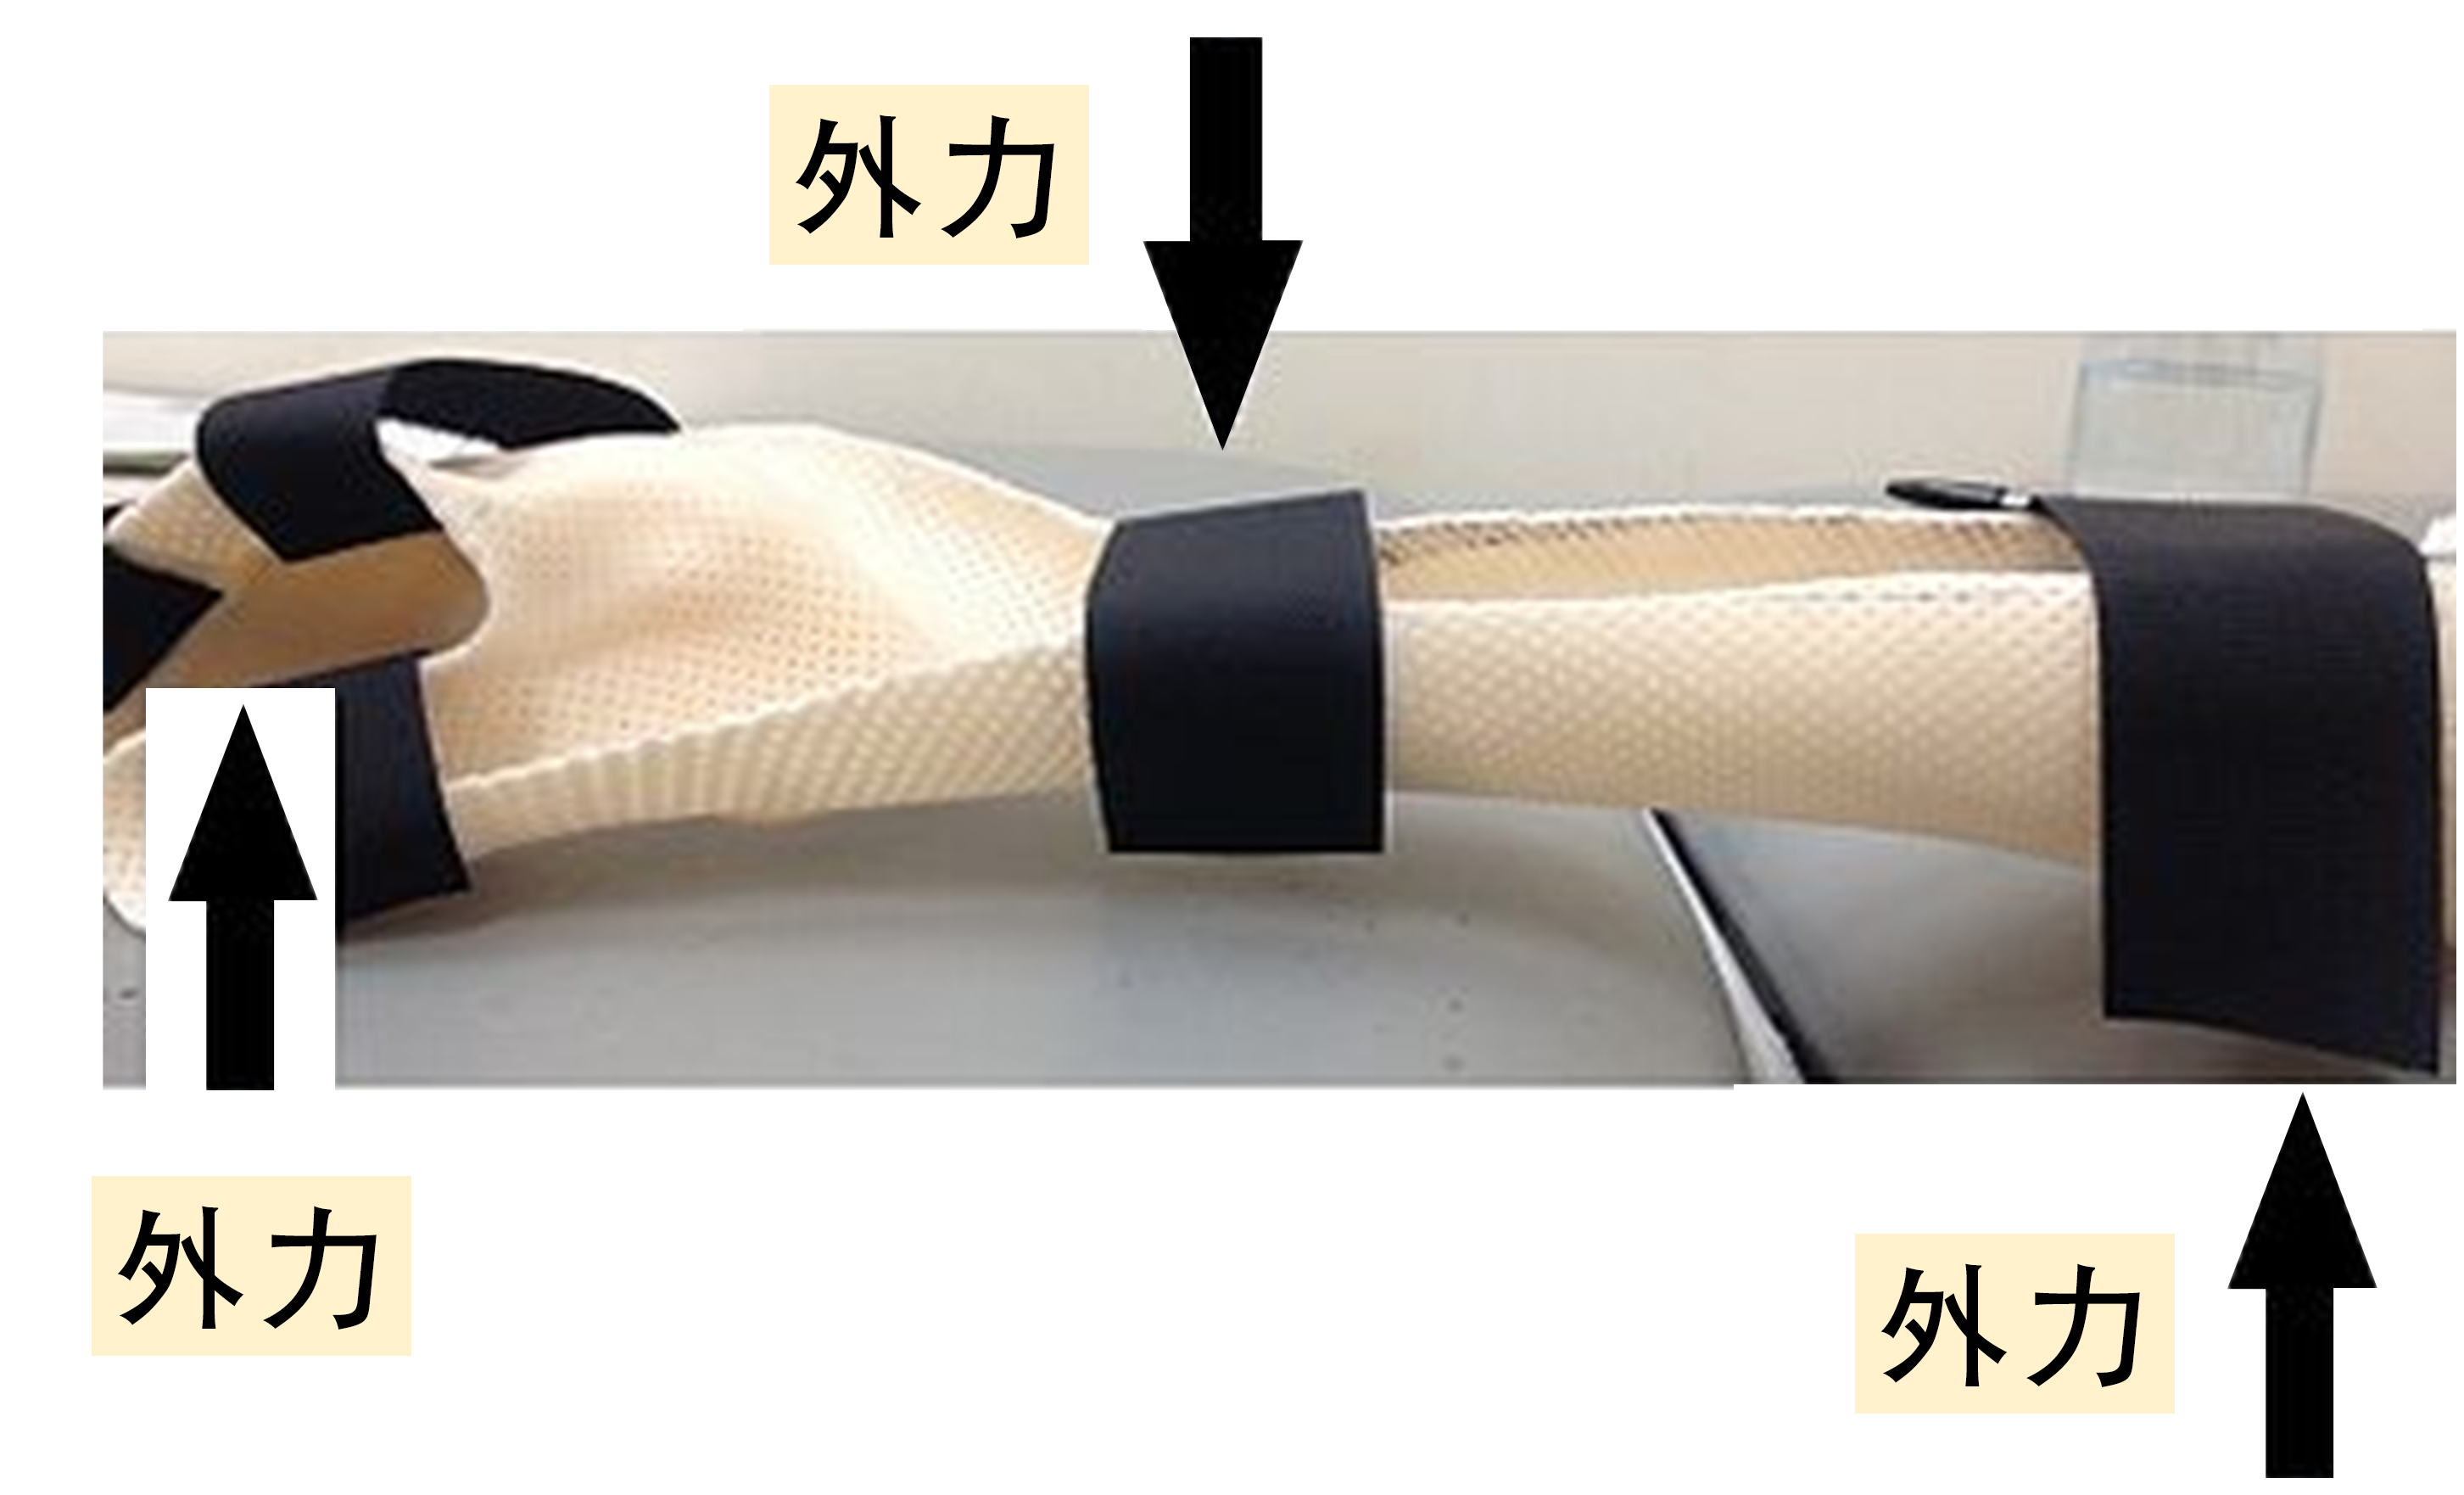 一支右手佩戴的手部固定支架及闡述了「外力牽拉性」的力學原理